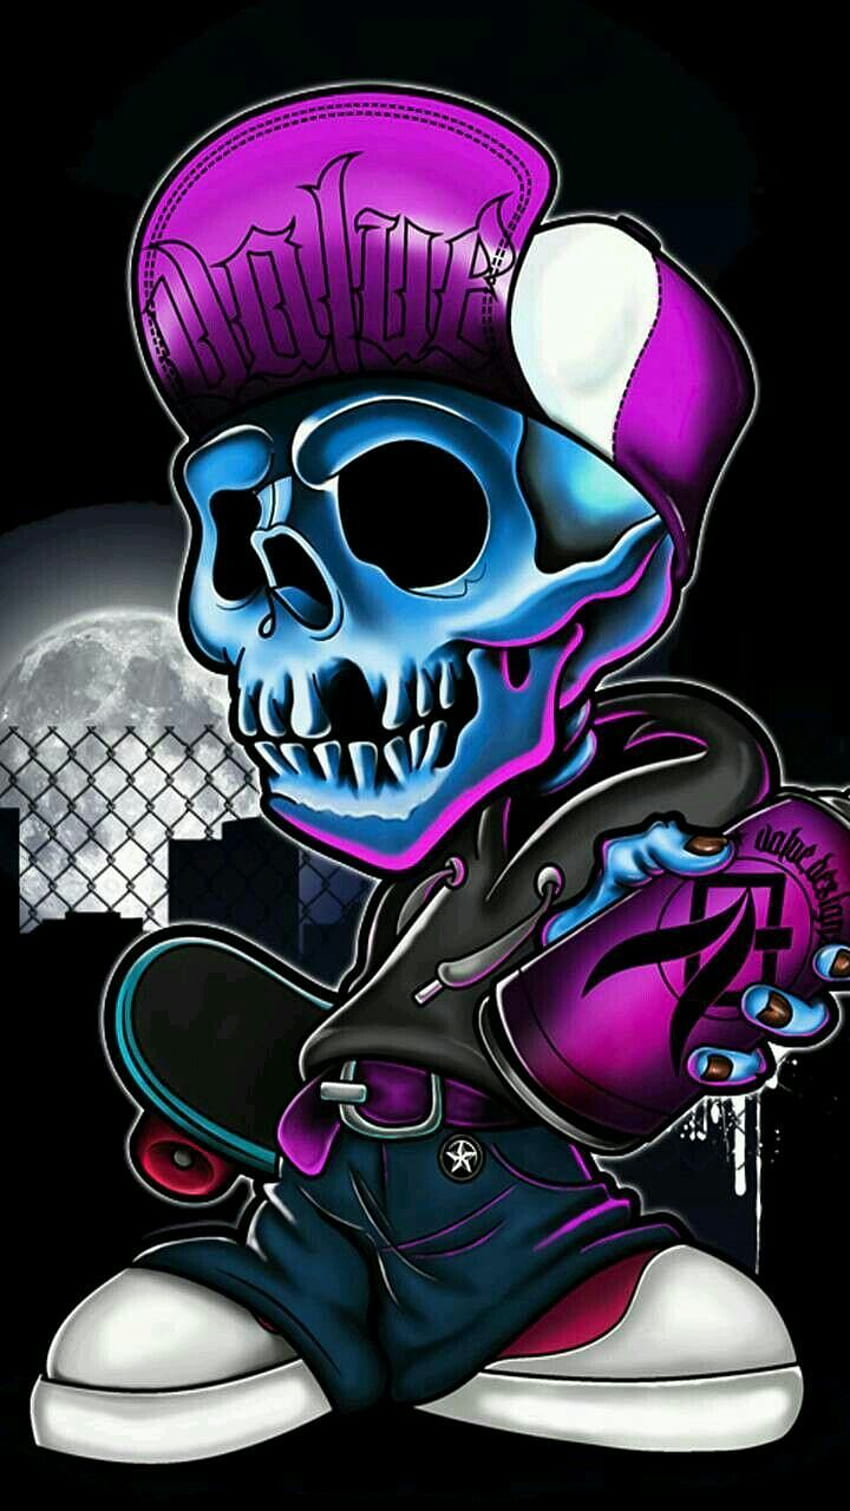 Pin oleh Dj SaBIE13 di . karakter, Seni jalanan, Ilustrasi komik, DJ Skulls wallpaper ponsel HD